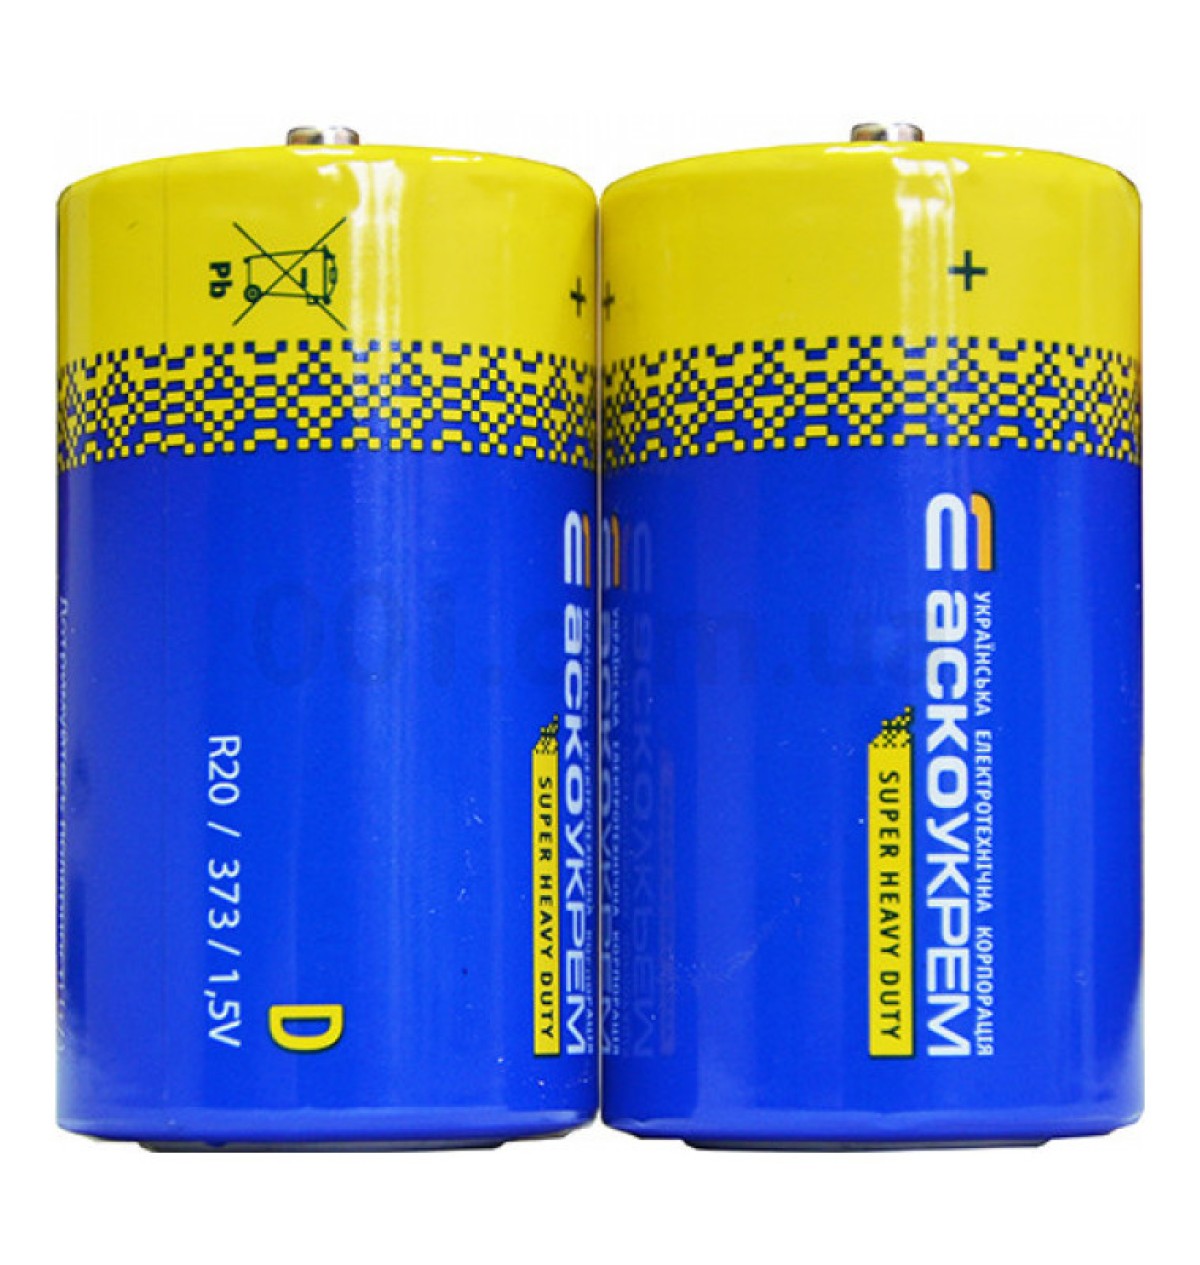 Батарейка солевая D.R20.SP2, типоразмер D упаковка shrink 2 шт., АСКО-УКРЕМ 98_103.jpg